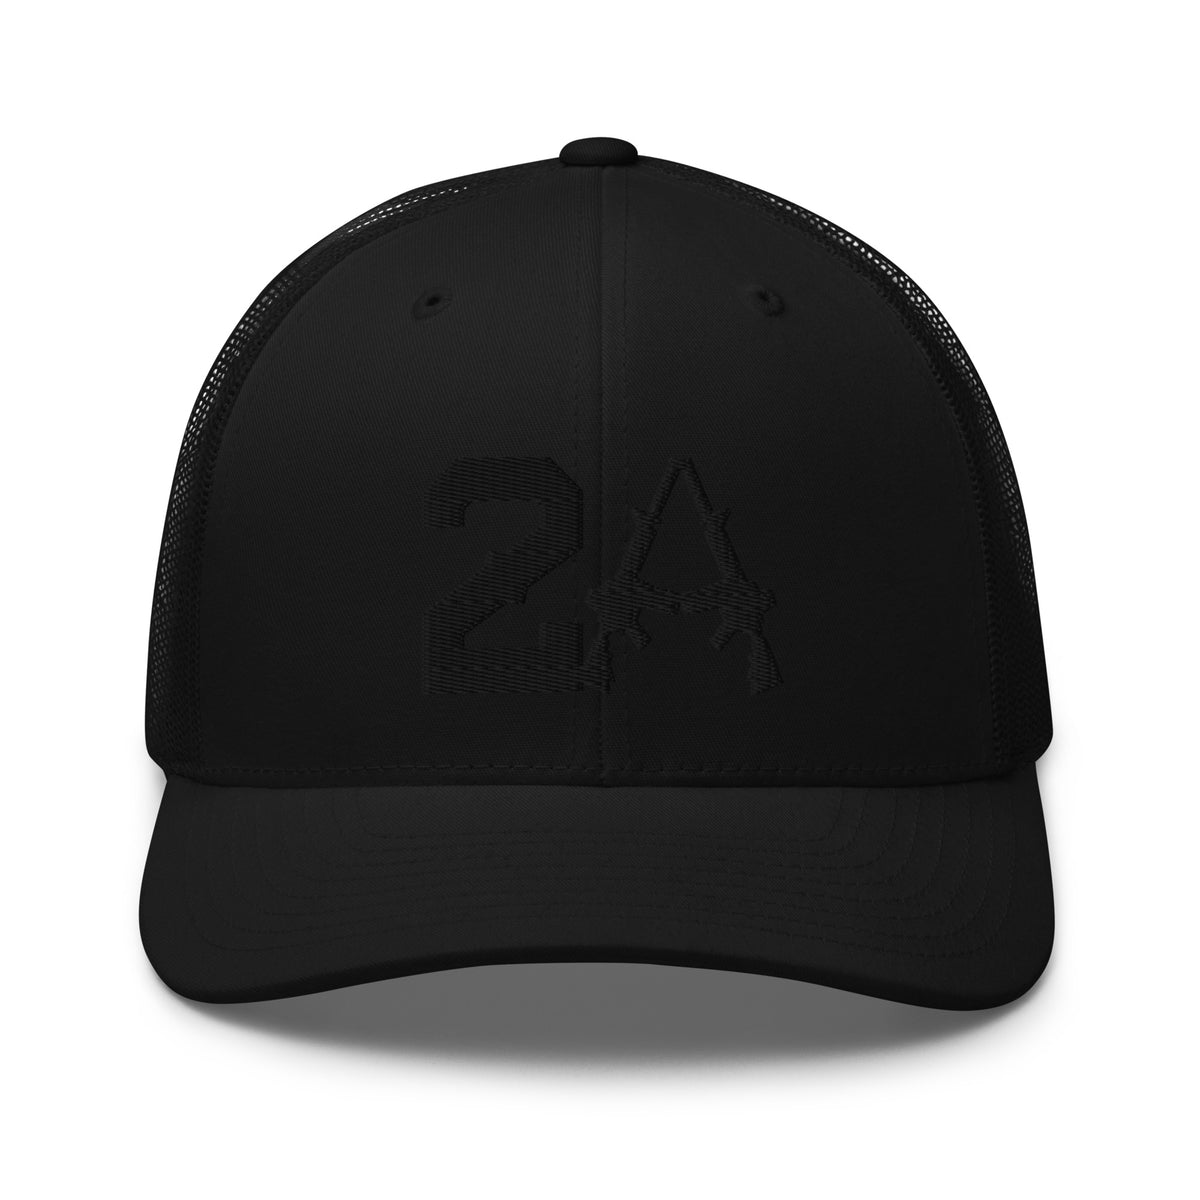 2A Smoke Snapback Hat